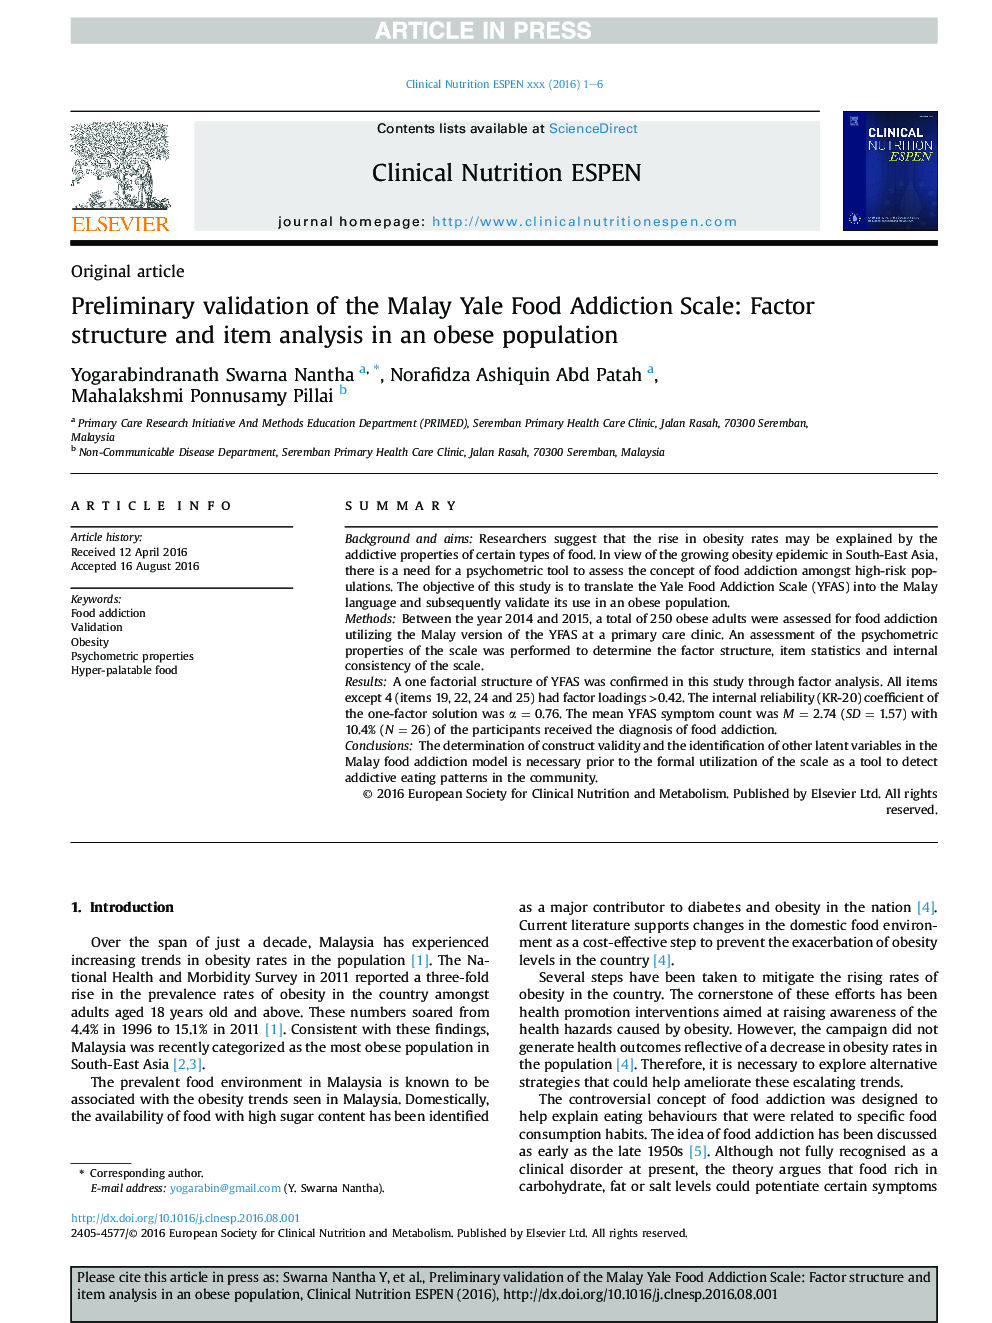 اعتبار اولیه مقیاس معتادان مواد غذایی مالای ییل: ساختار فاکتور و تجزیه و تحلیل مورد در جمعیت چاق 